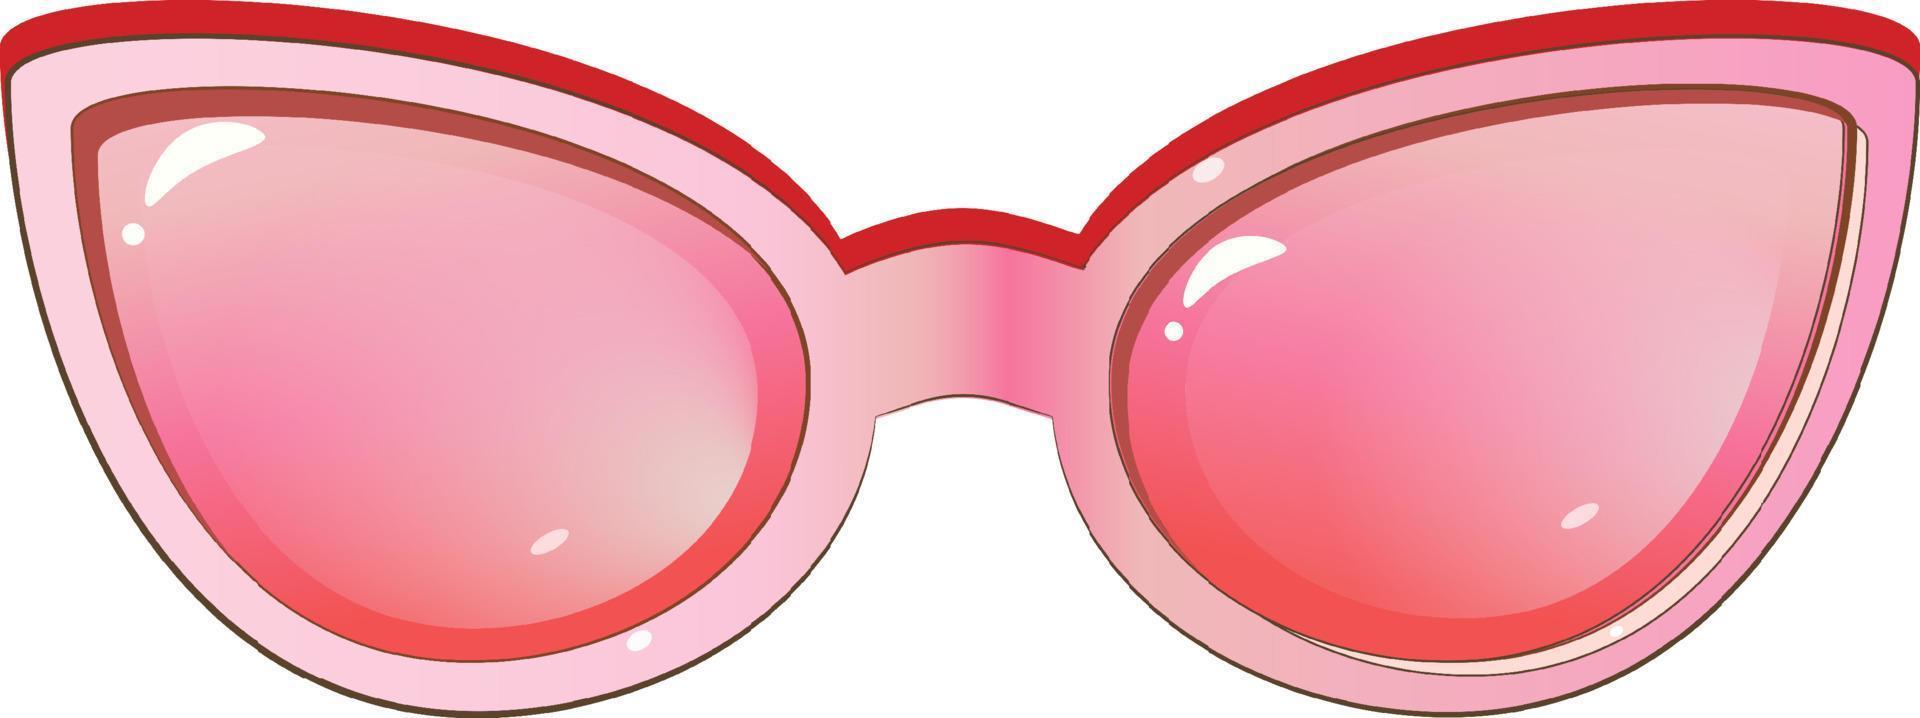 icône de lunettes de soleil à la mode rose en style cartoon isolé sur fond blanc. illustration vectorielle stock. vecteur